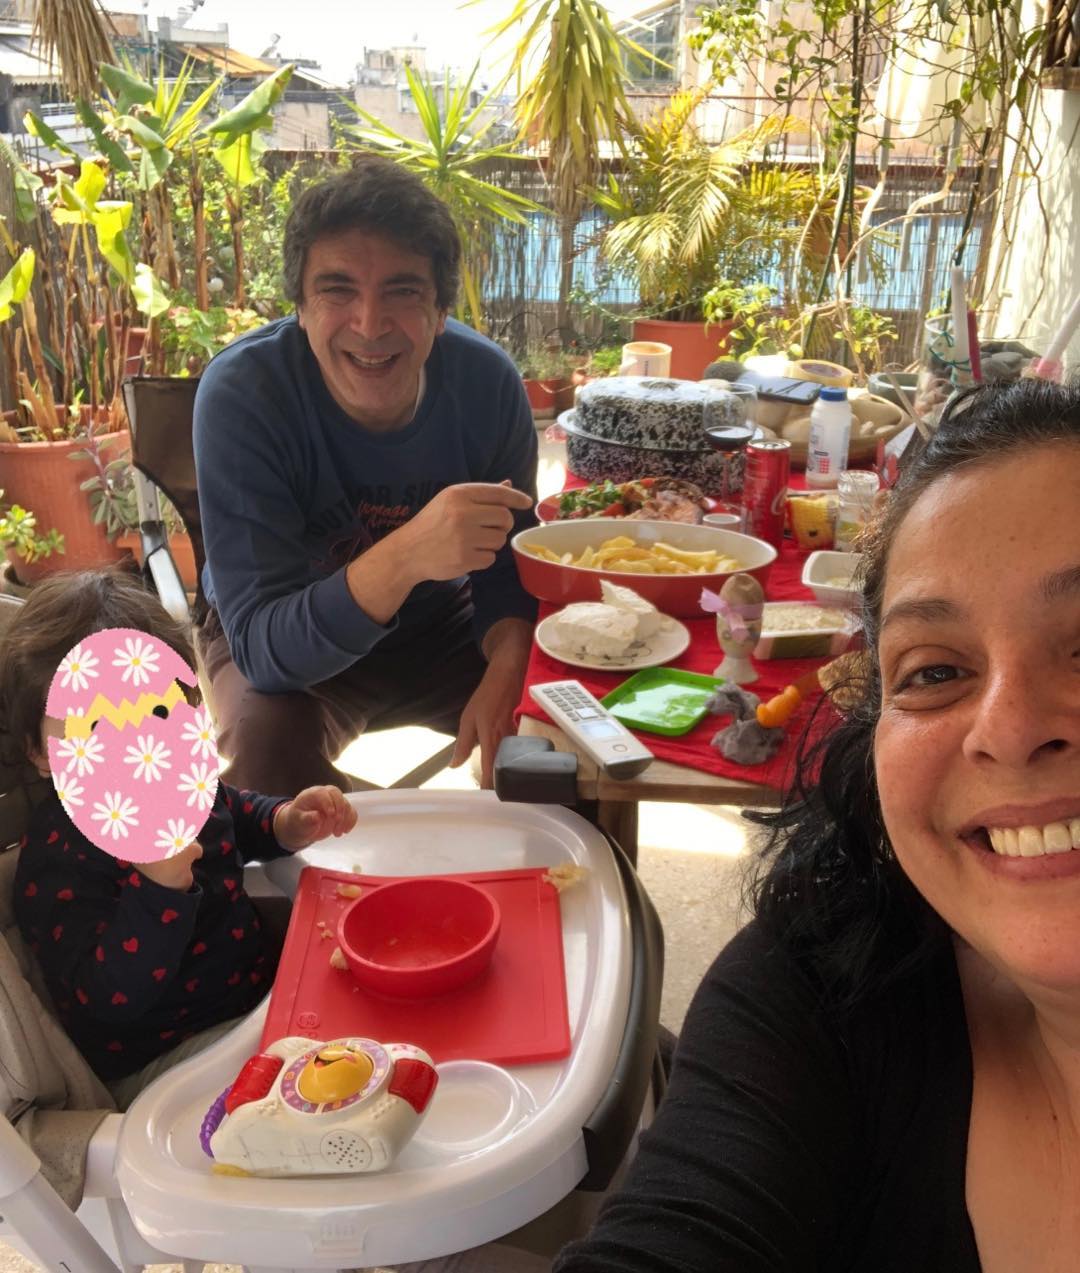 Βασιλική Ανδρίτσου: Το γεύμα στη βεράντα με τον σύζυγο και την κόρη τους! (εικόνα)